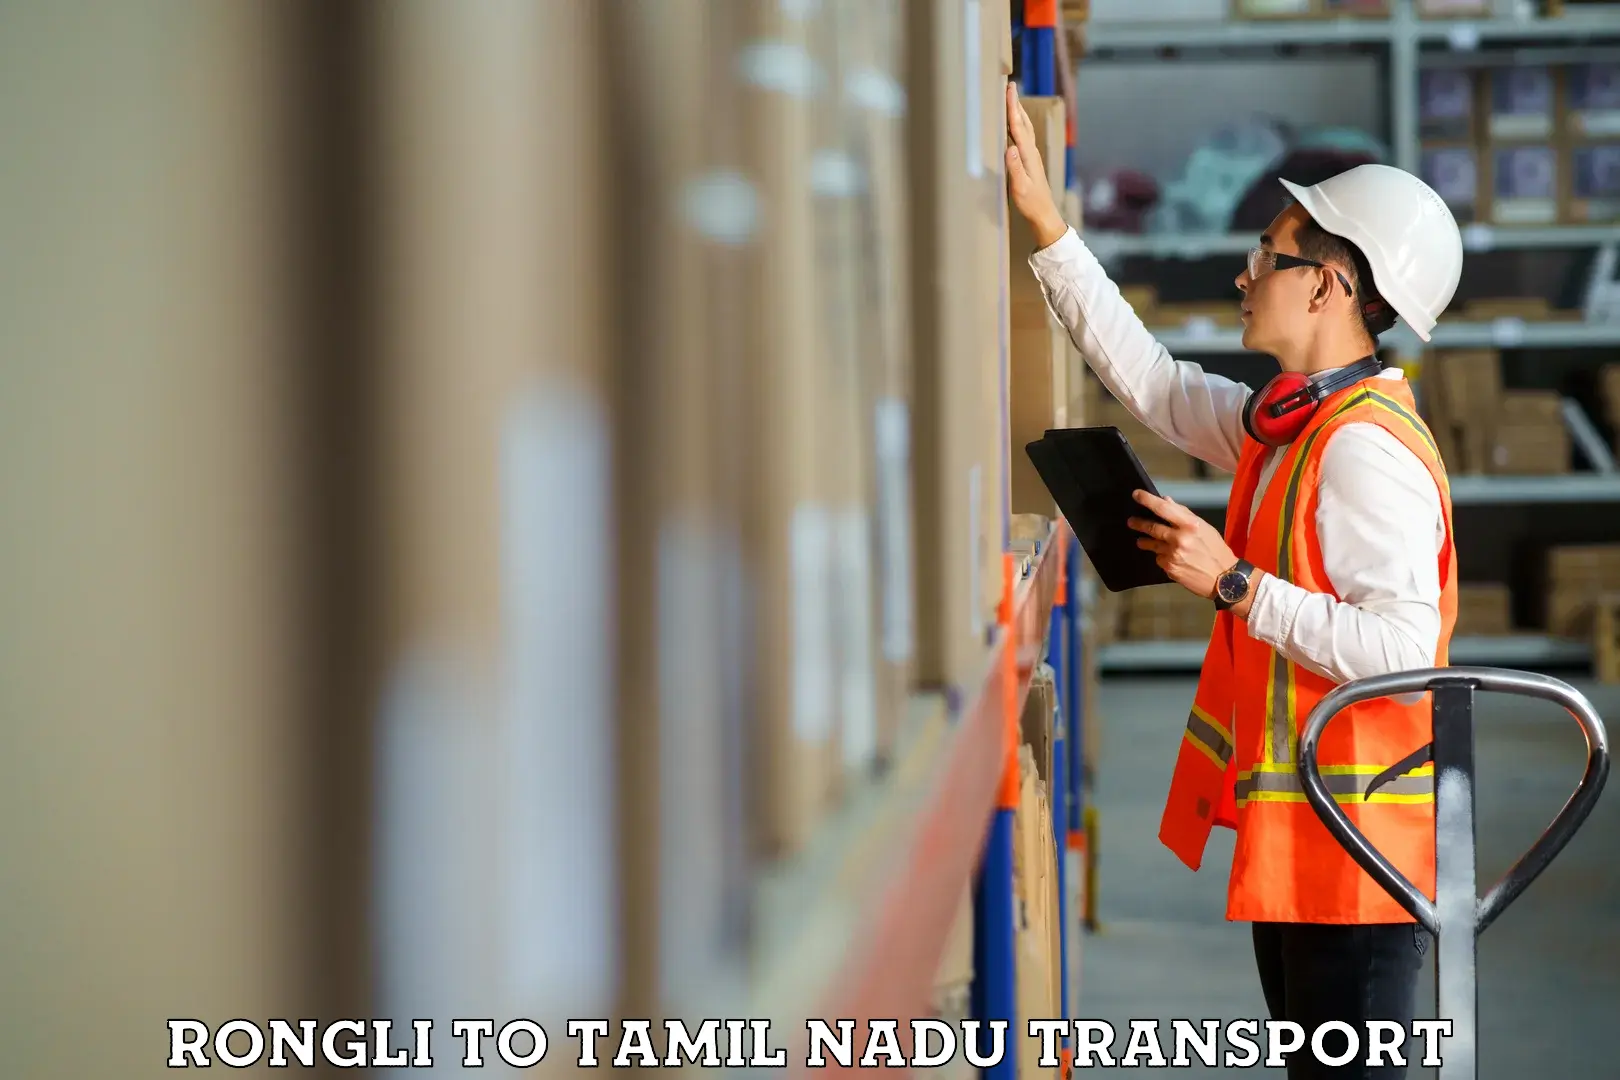 Pick up transport service Rongli to Chennai Port